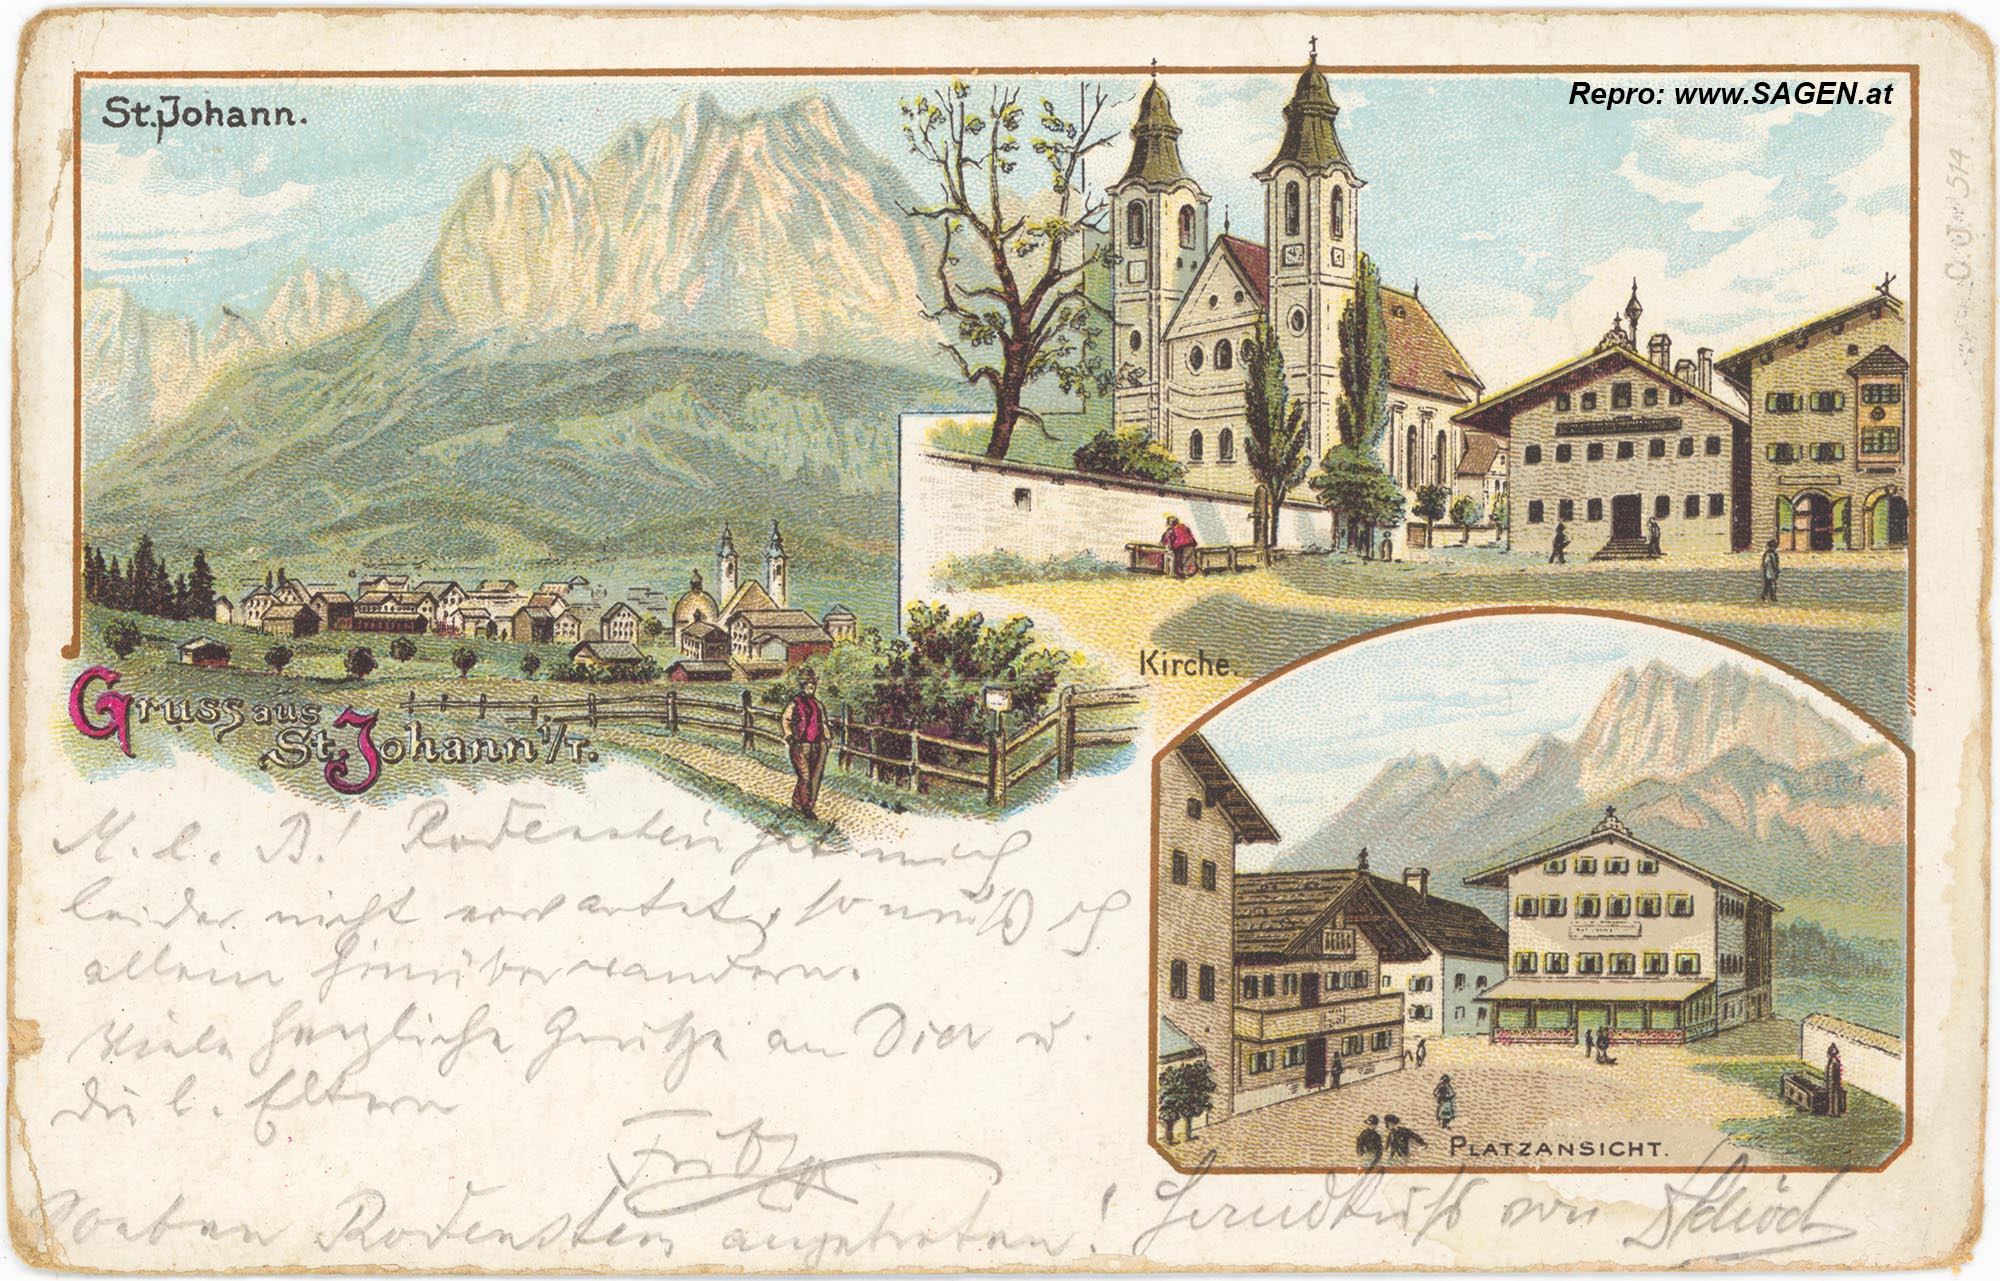 St. Johann in Tirol, Lithografie um 1898